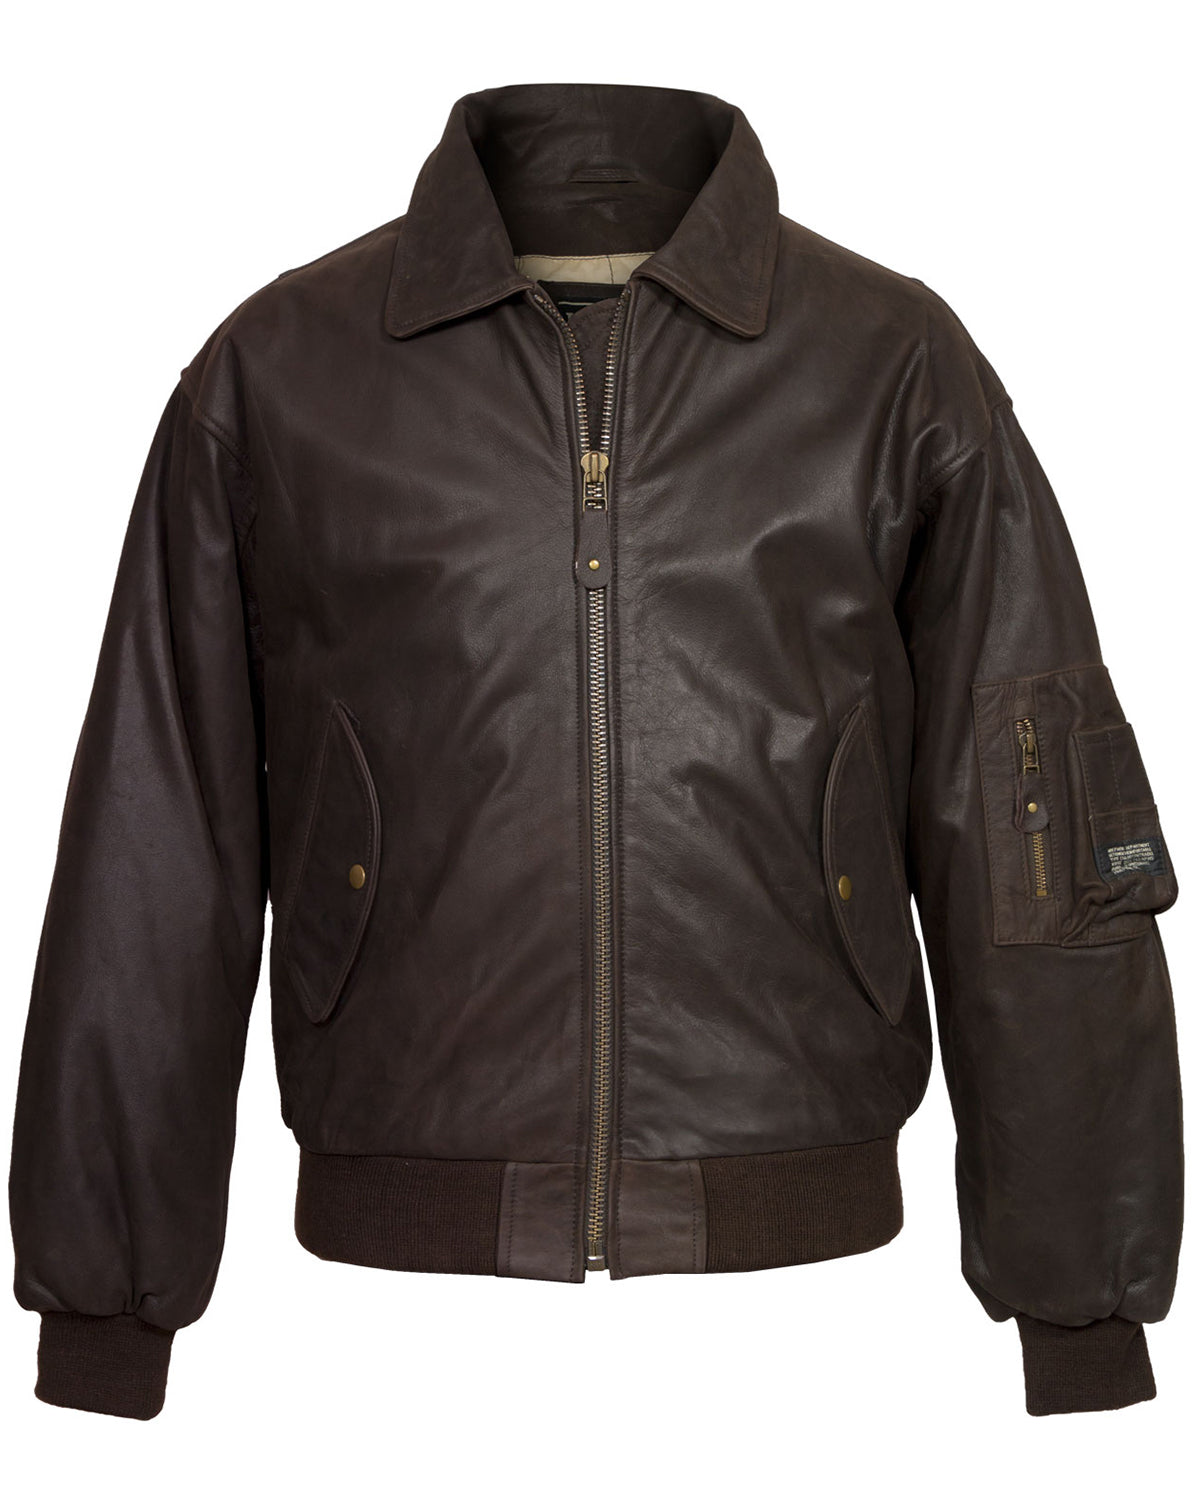 Mens A-2 Brown Leather Jacket Bomber | Elite Jacket